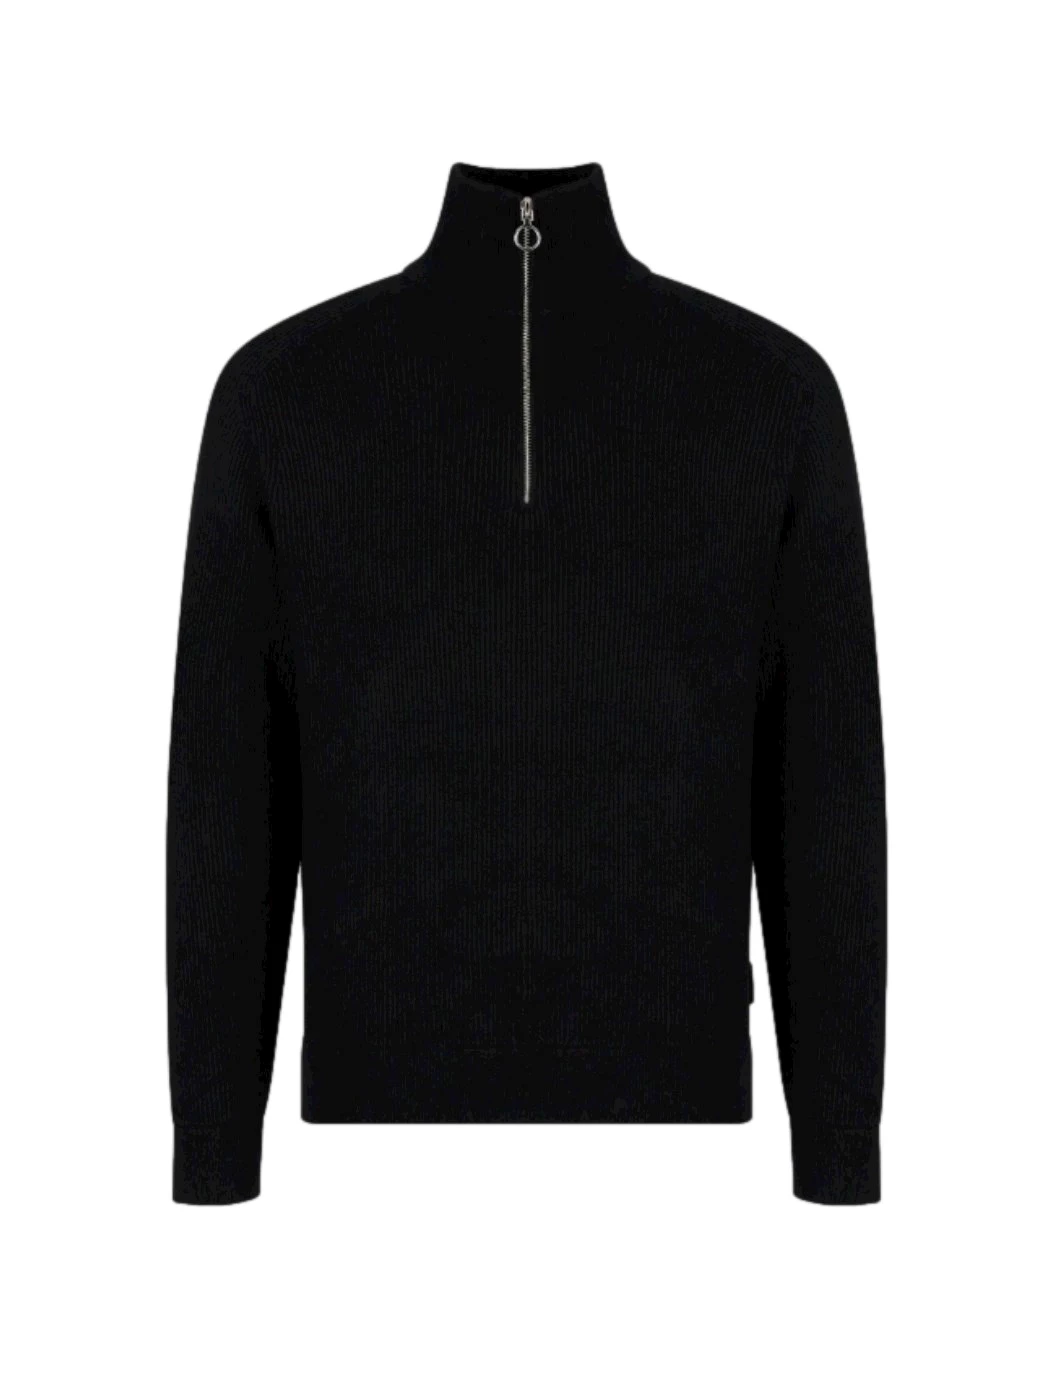 Armani Exchange turtleneck sweater